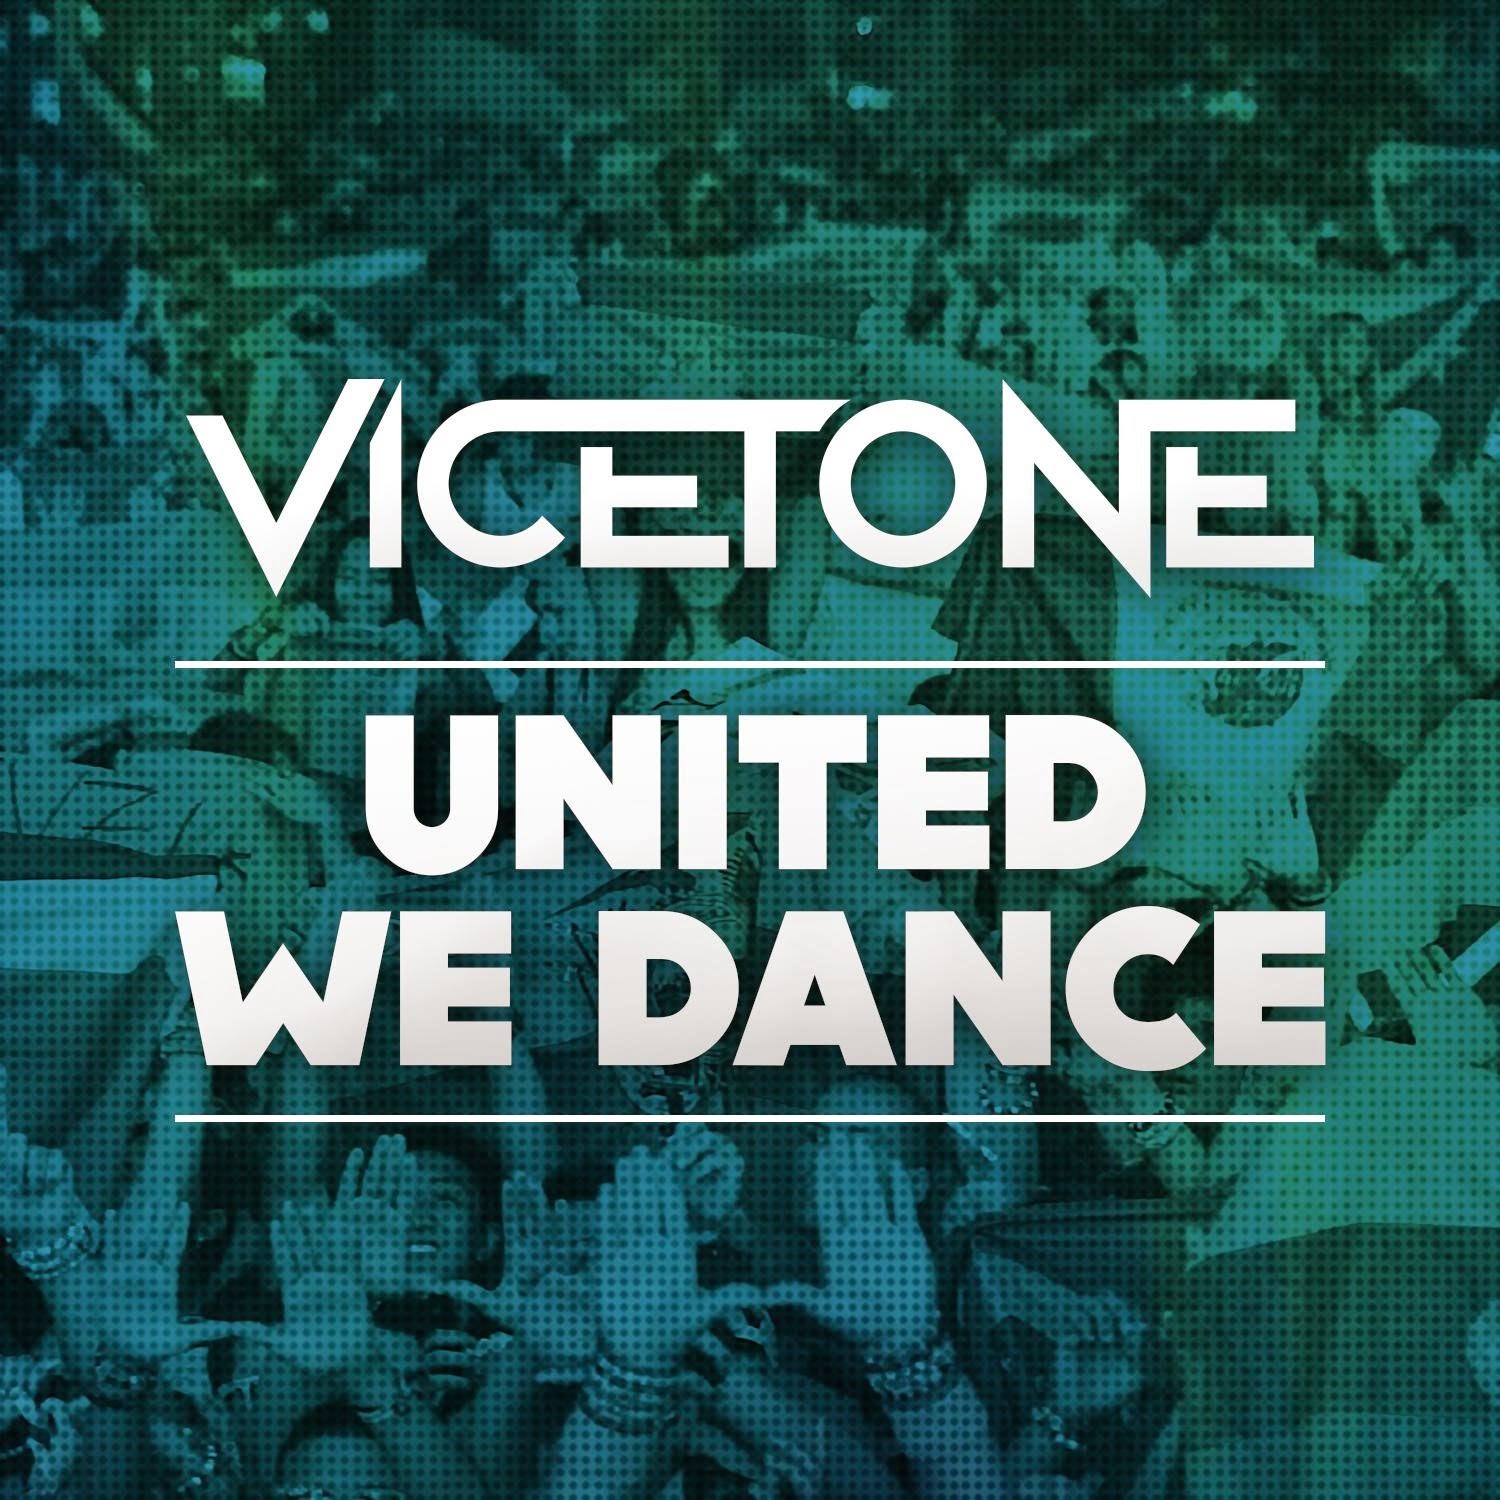 vicetone united we dance